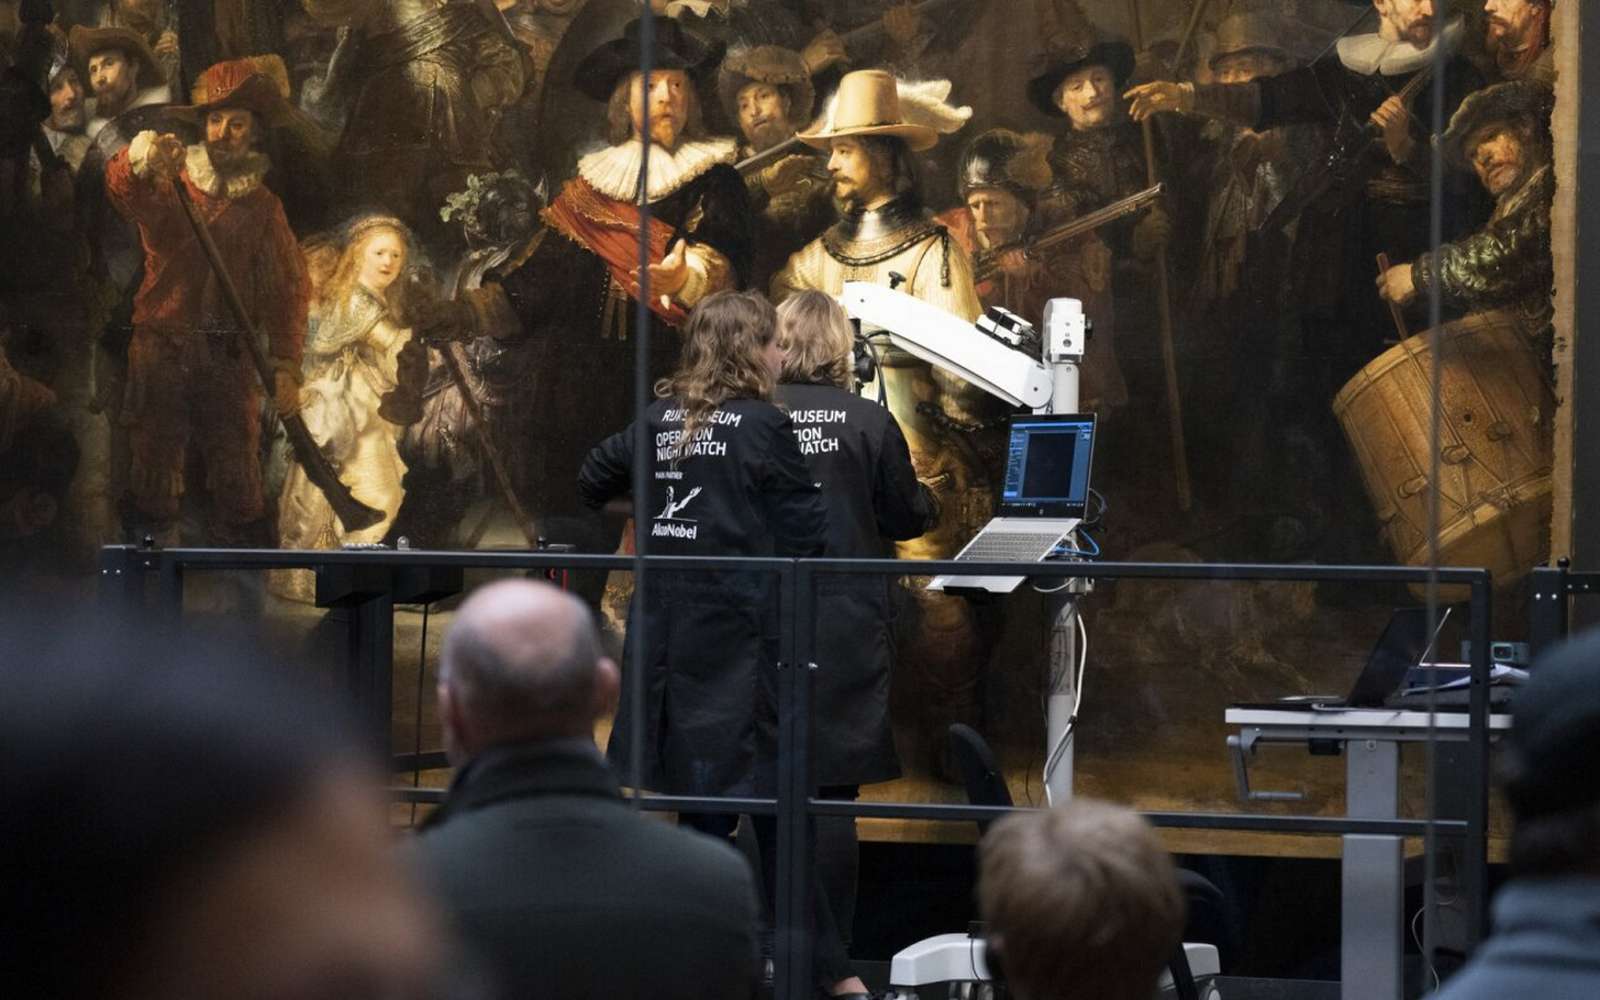 La toile de près de 16 m2 a été photographiée au plus près pour relever chaque détail de l’œuvre. © Rijksmuseum